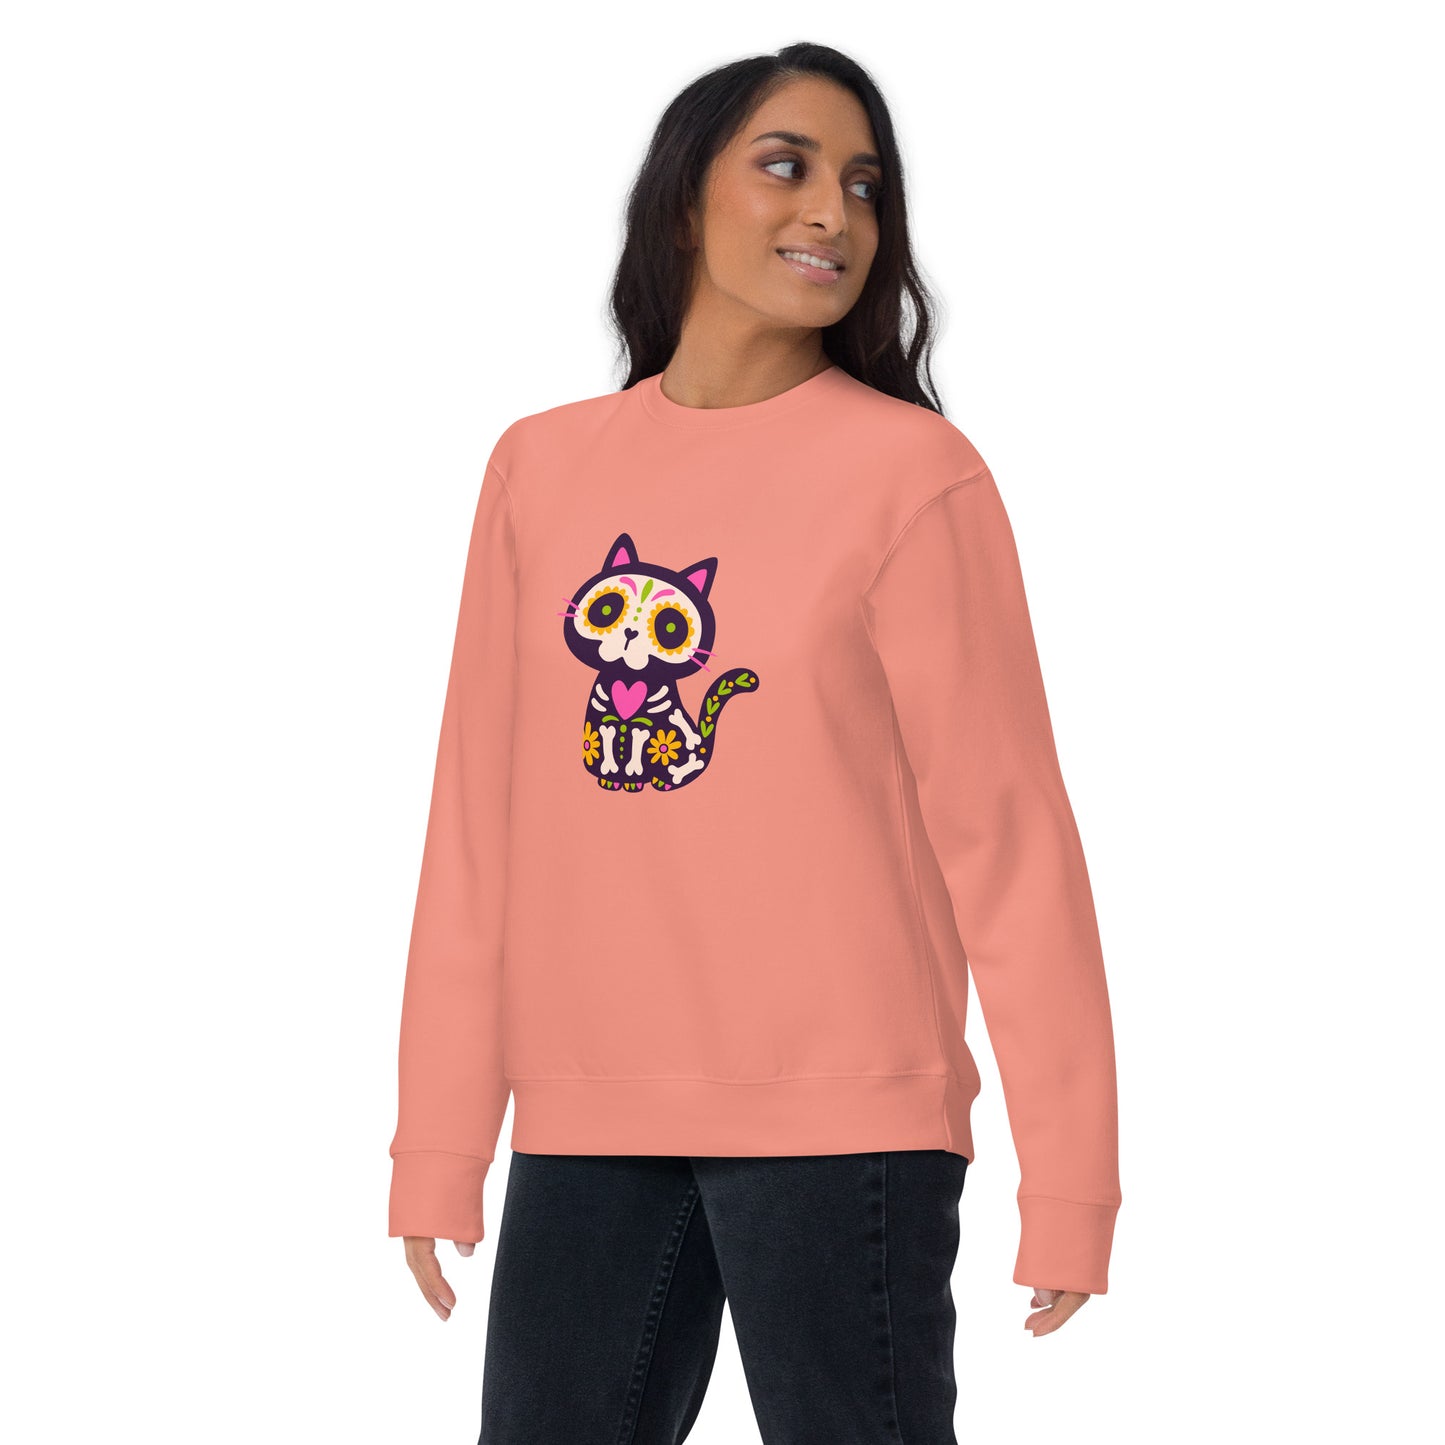 "Muertos Cat" Unisex Premium Sweatshirt